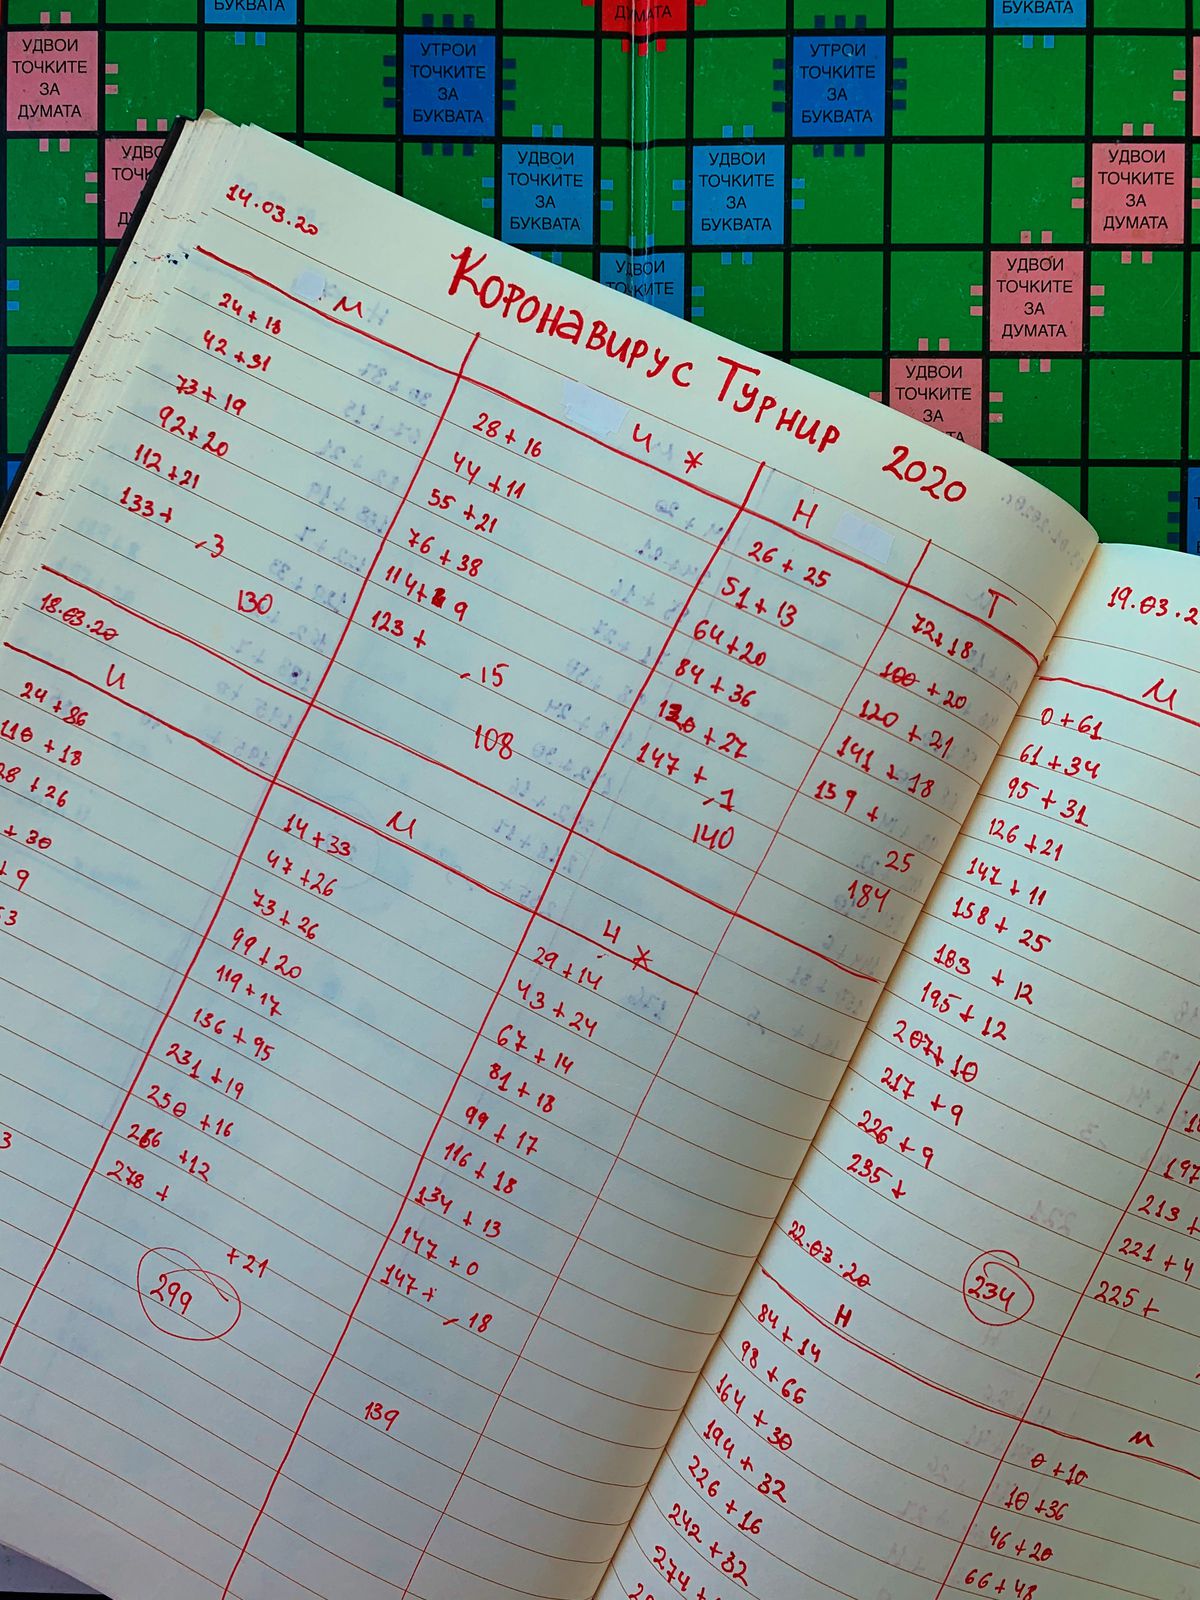 Una pagina accuratamente foderata con inchiostro rosso mostra i punteggi delle partite di Scrabble.  C'è scritto 